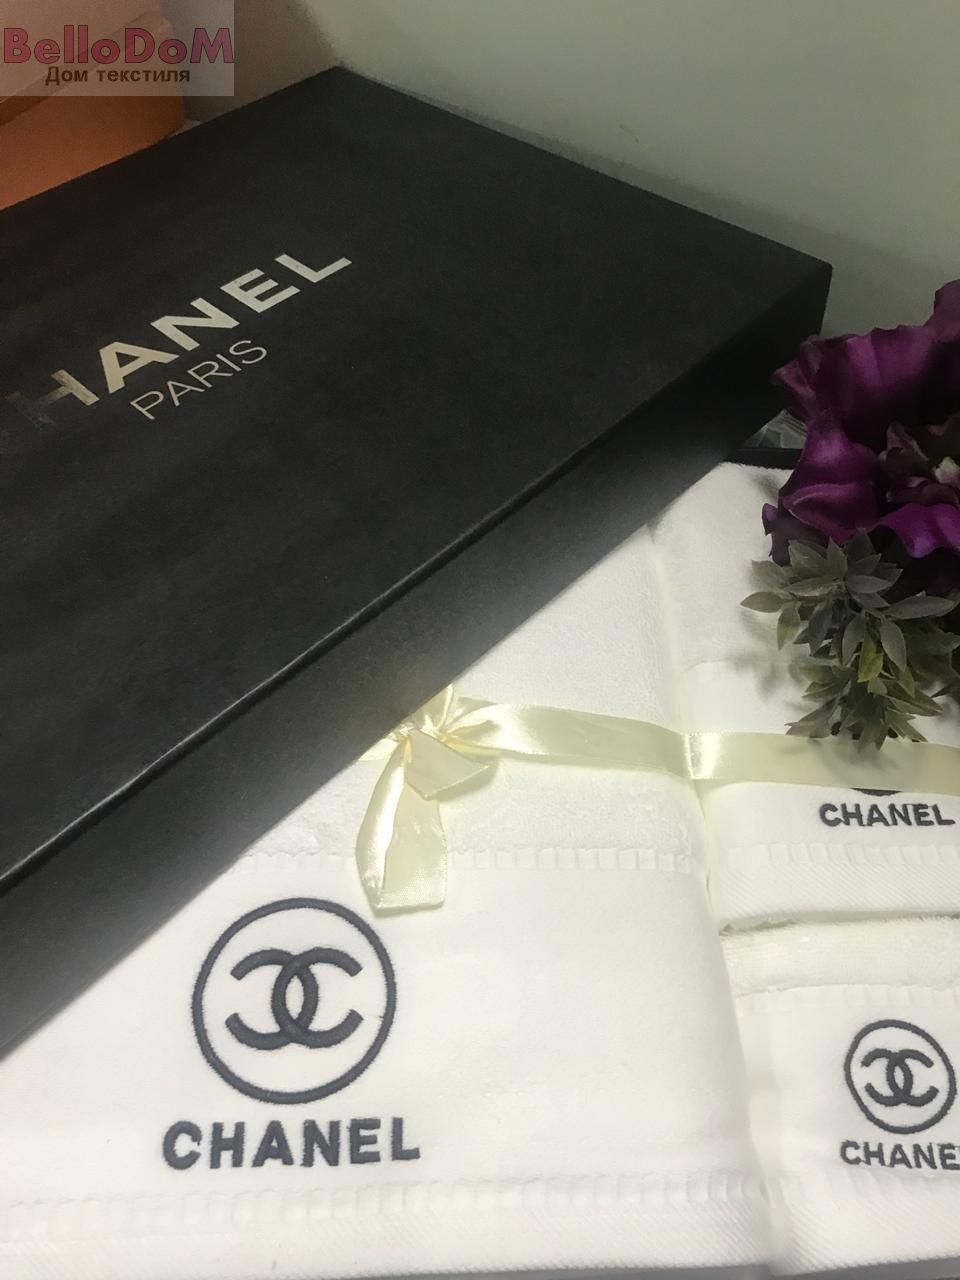 Доставка с Chanel в Украину  Заказ и доставка товара с Chanel в Киев   Unitrade Express